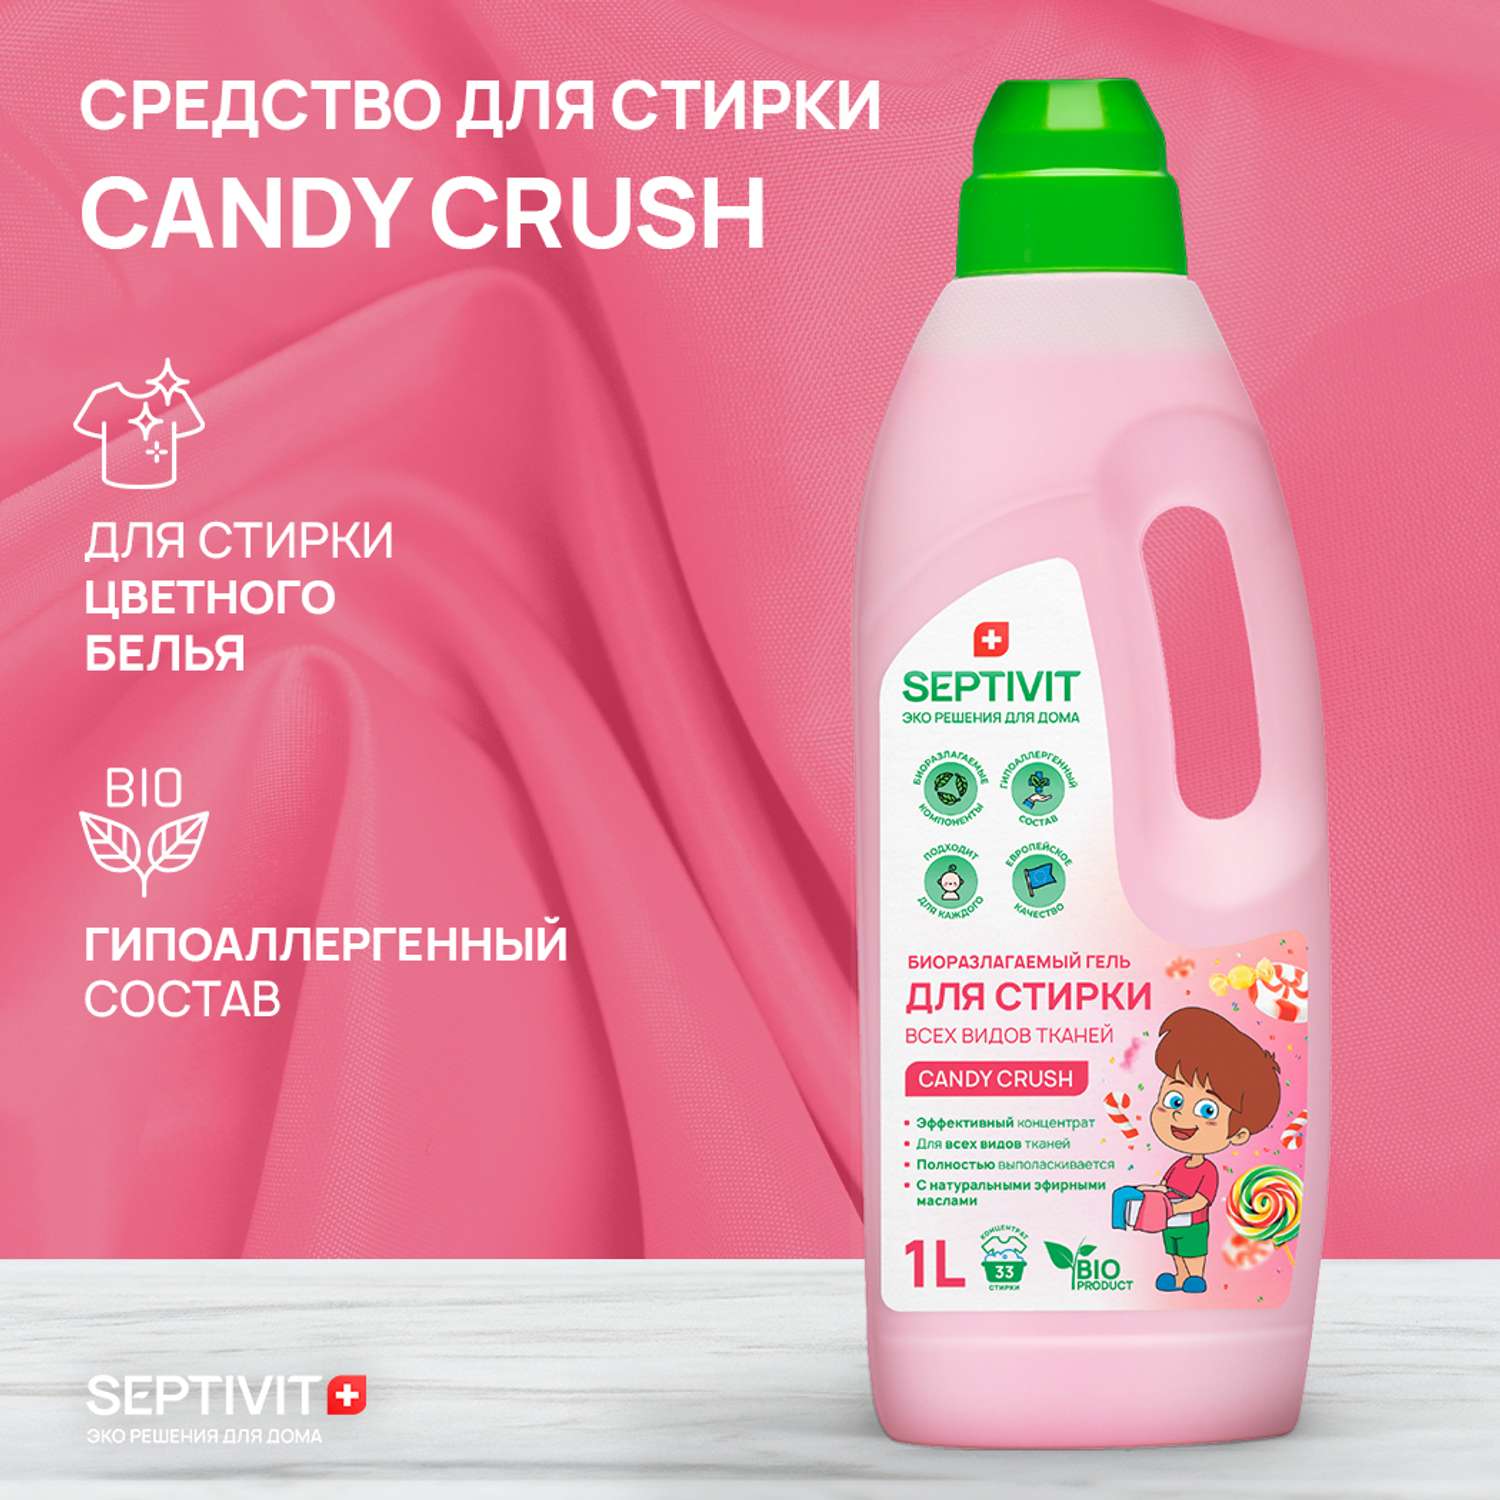 Гель для стирки SEPTIVIT Premium для всех видов тканей с ароматом Candy Crash 1л - фото 3